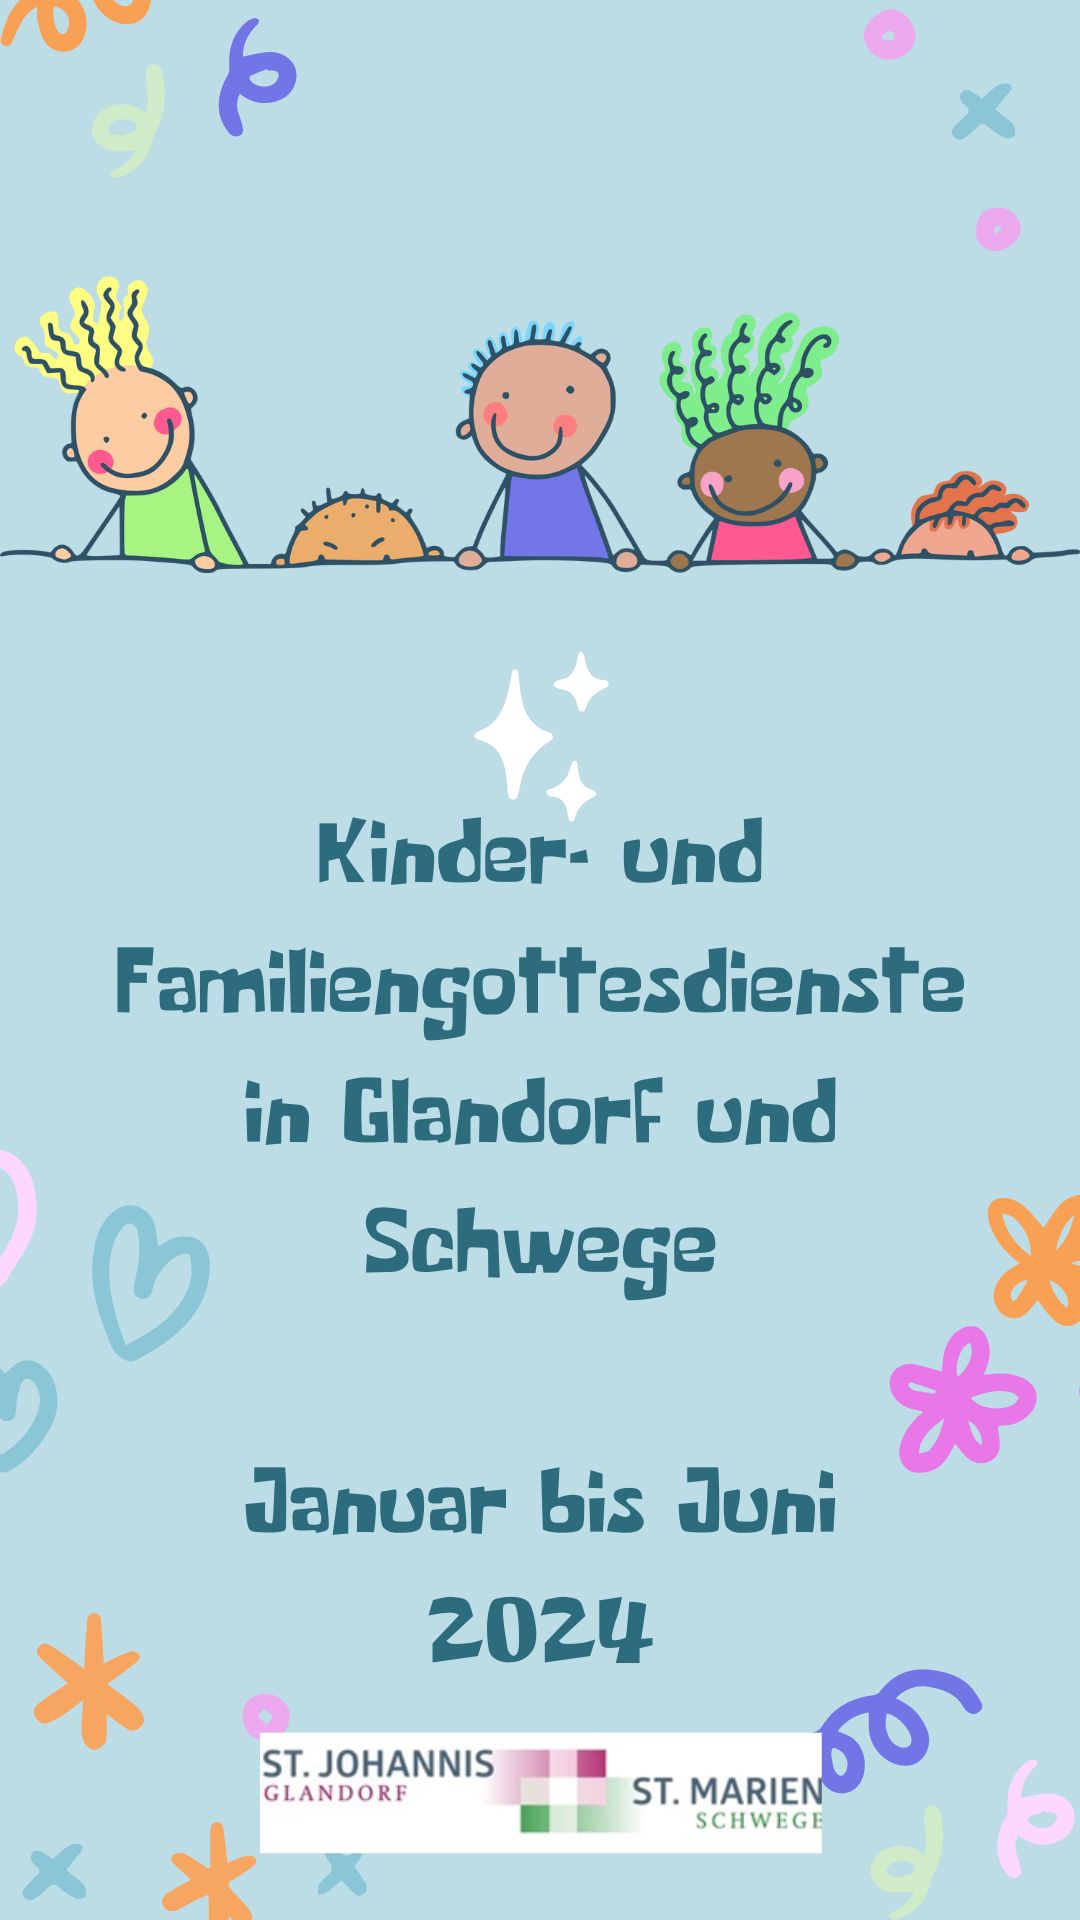 Kinder- und Familiengottesdienste in Glandorf und Schwege von Januar bis Juni